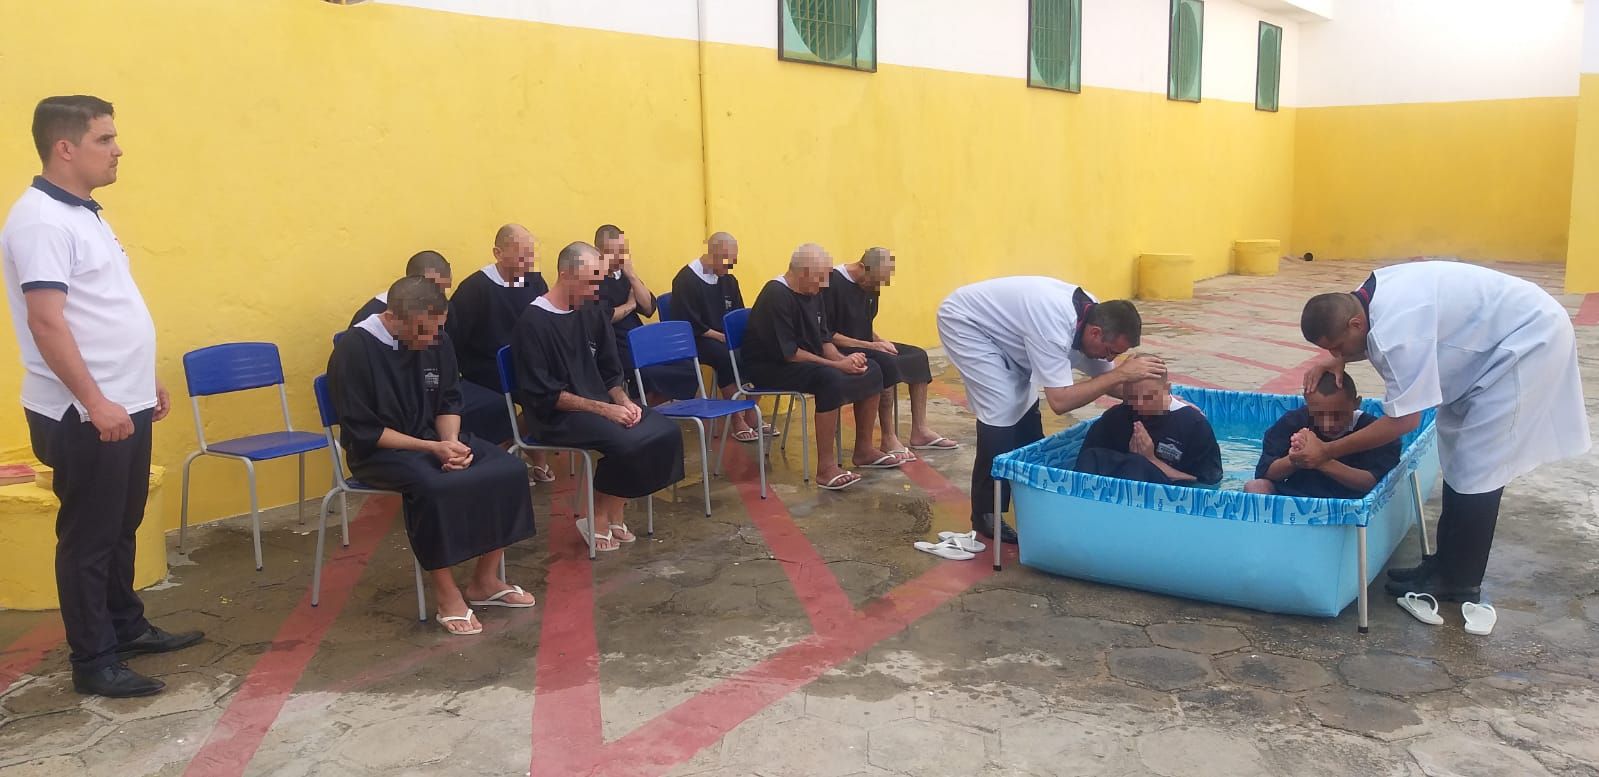 Reclusos se batizaram nas águas em unidade prisional do estado do Rio Grande do Norte